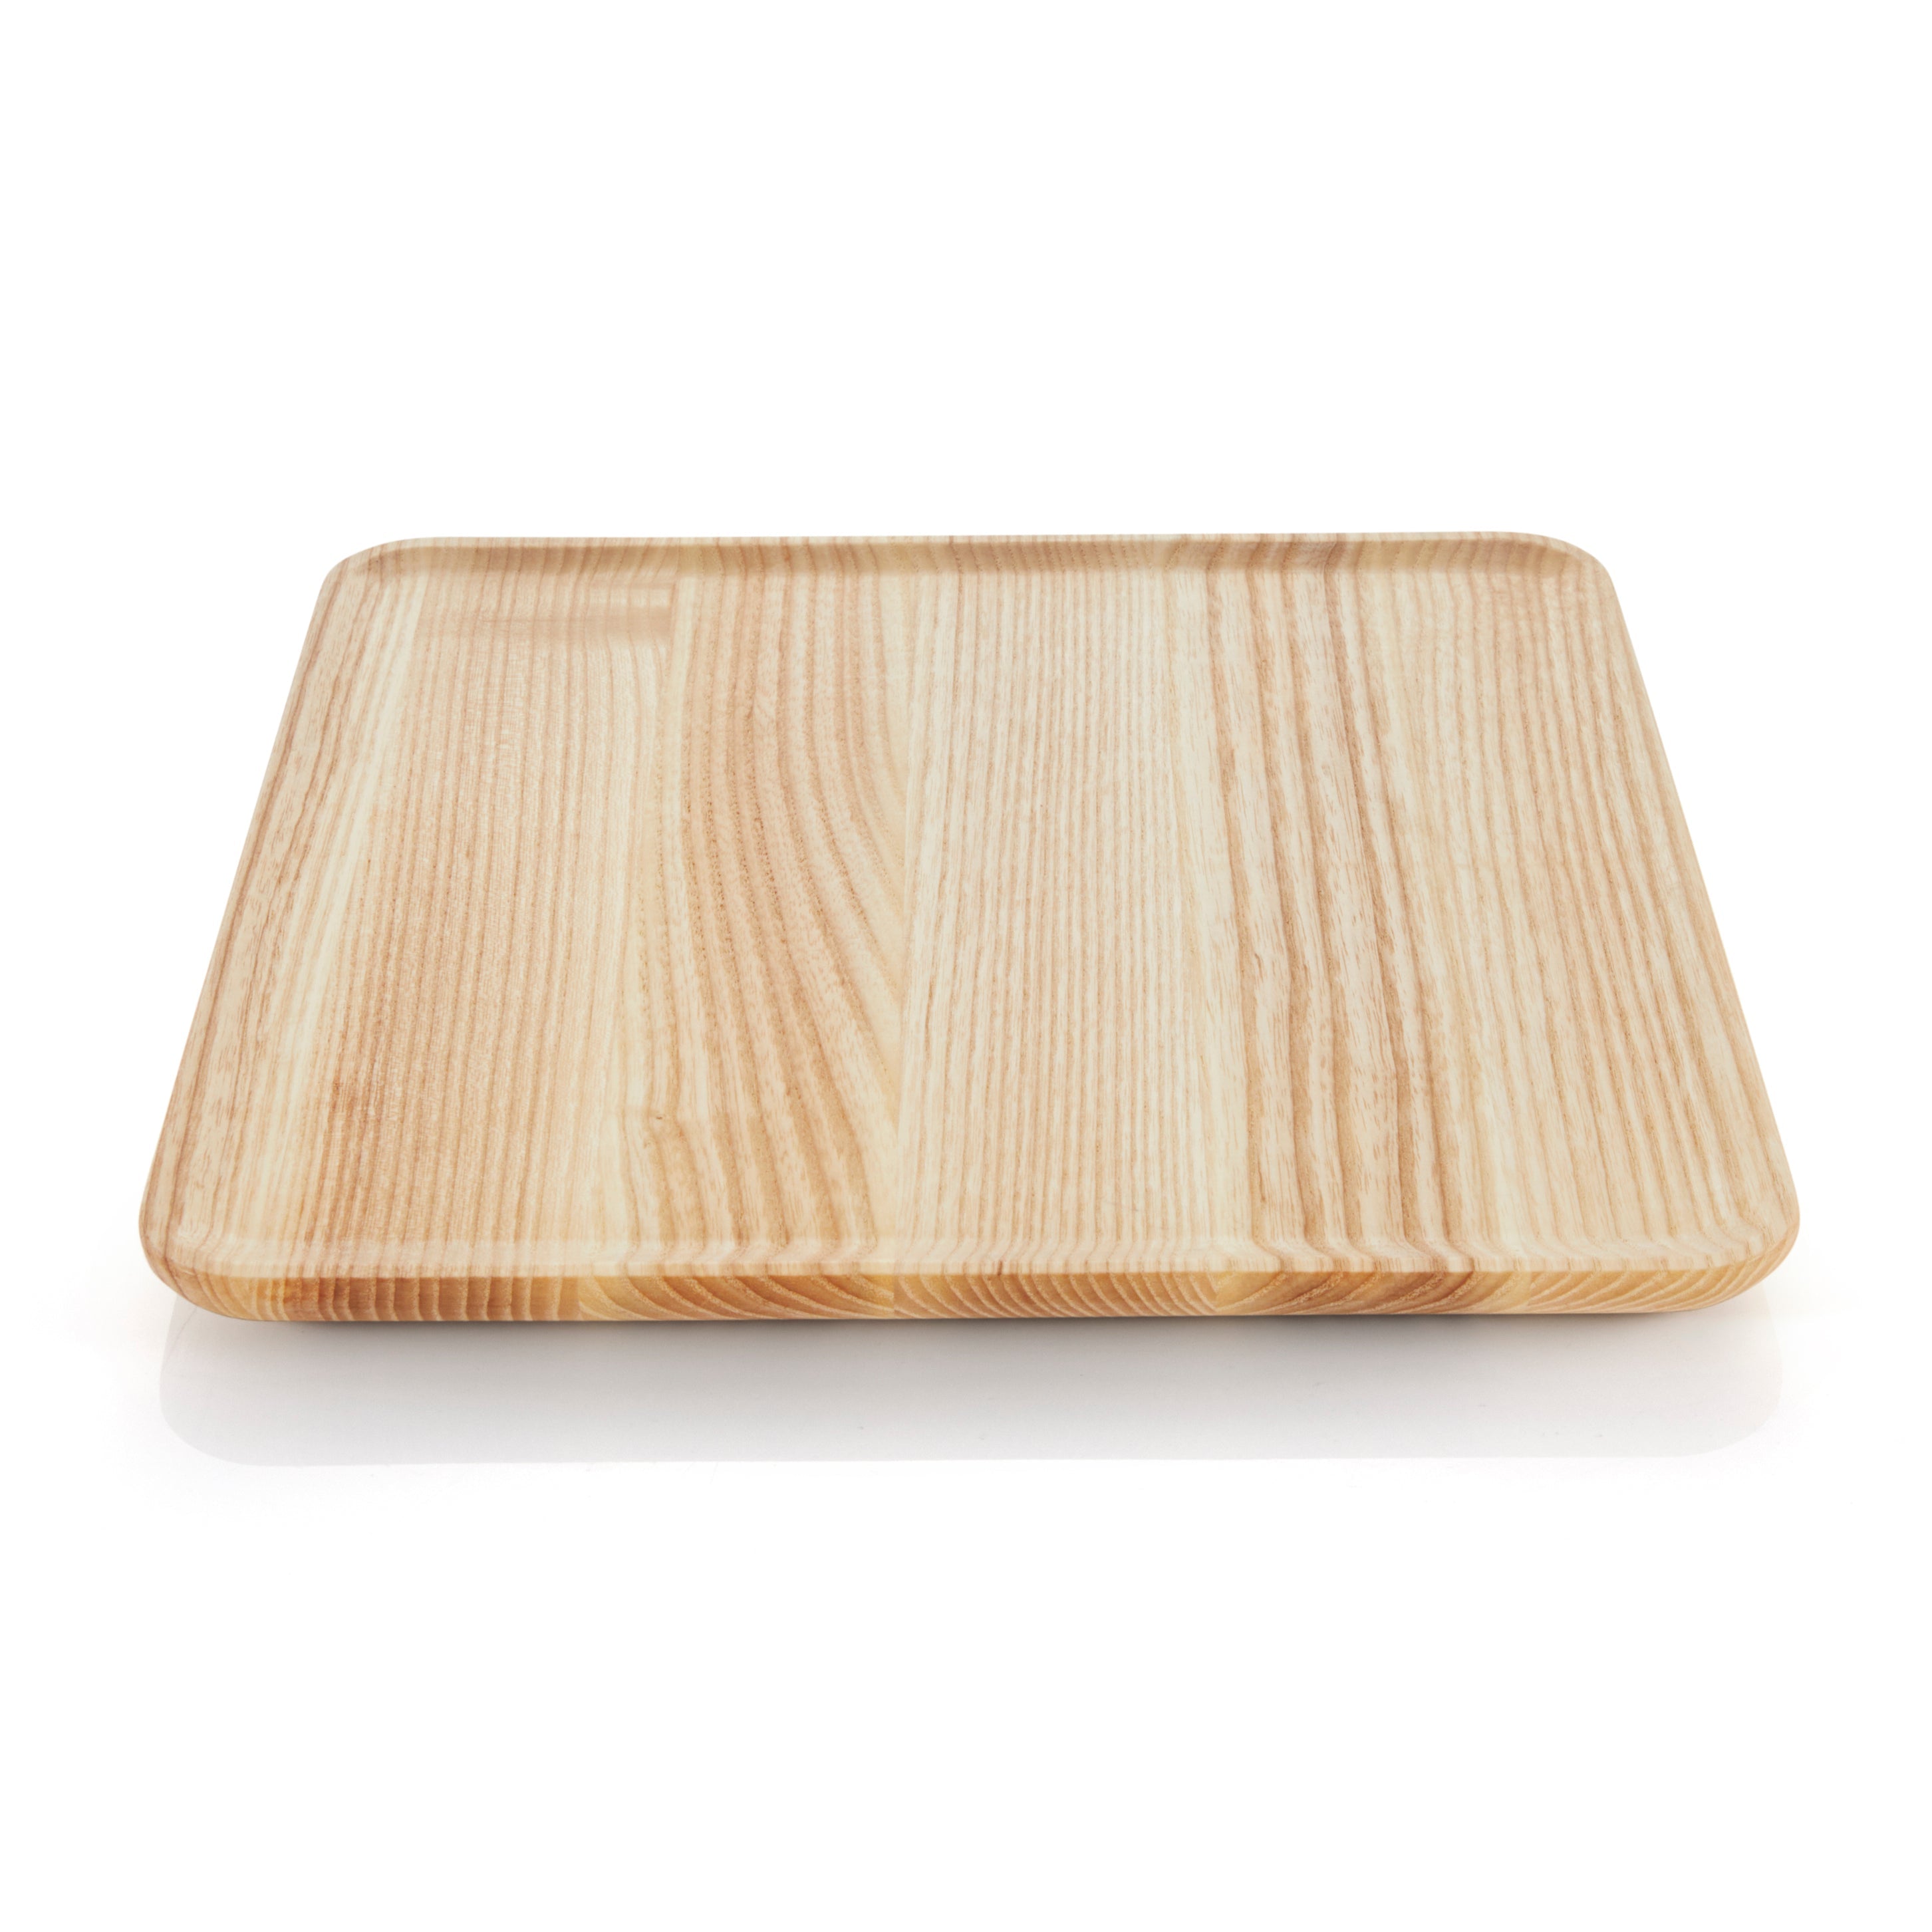 WMF 1x Tablett Holz (Esche) quadratisch 27x27cm